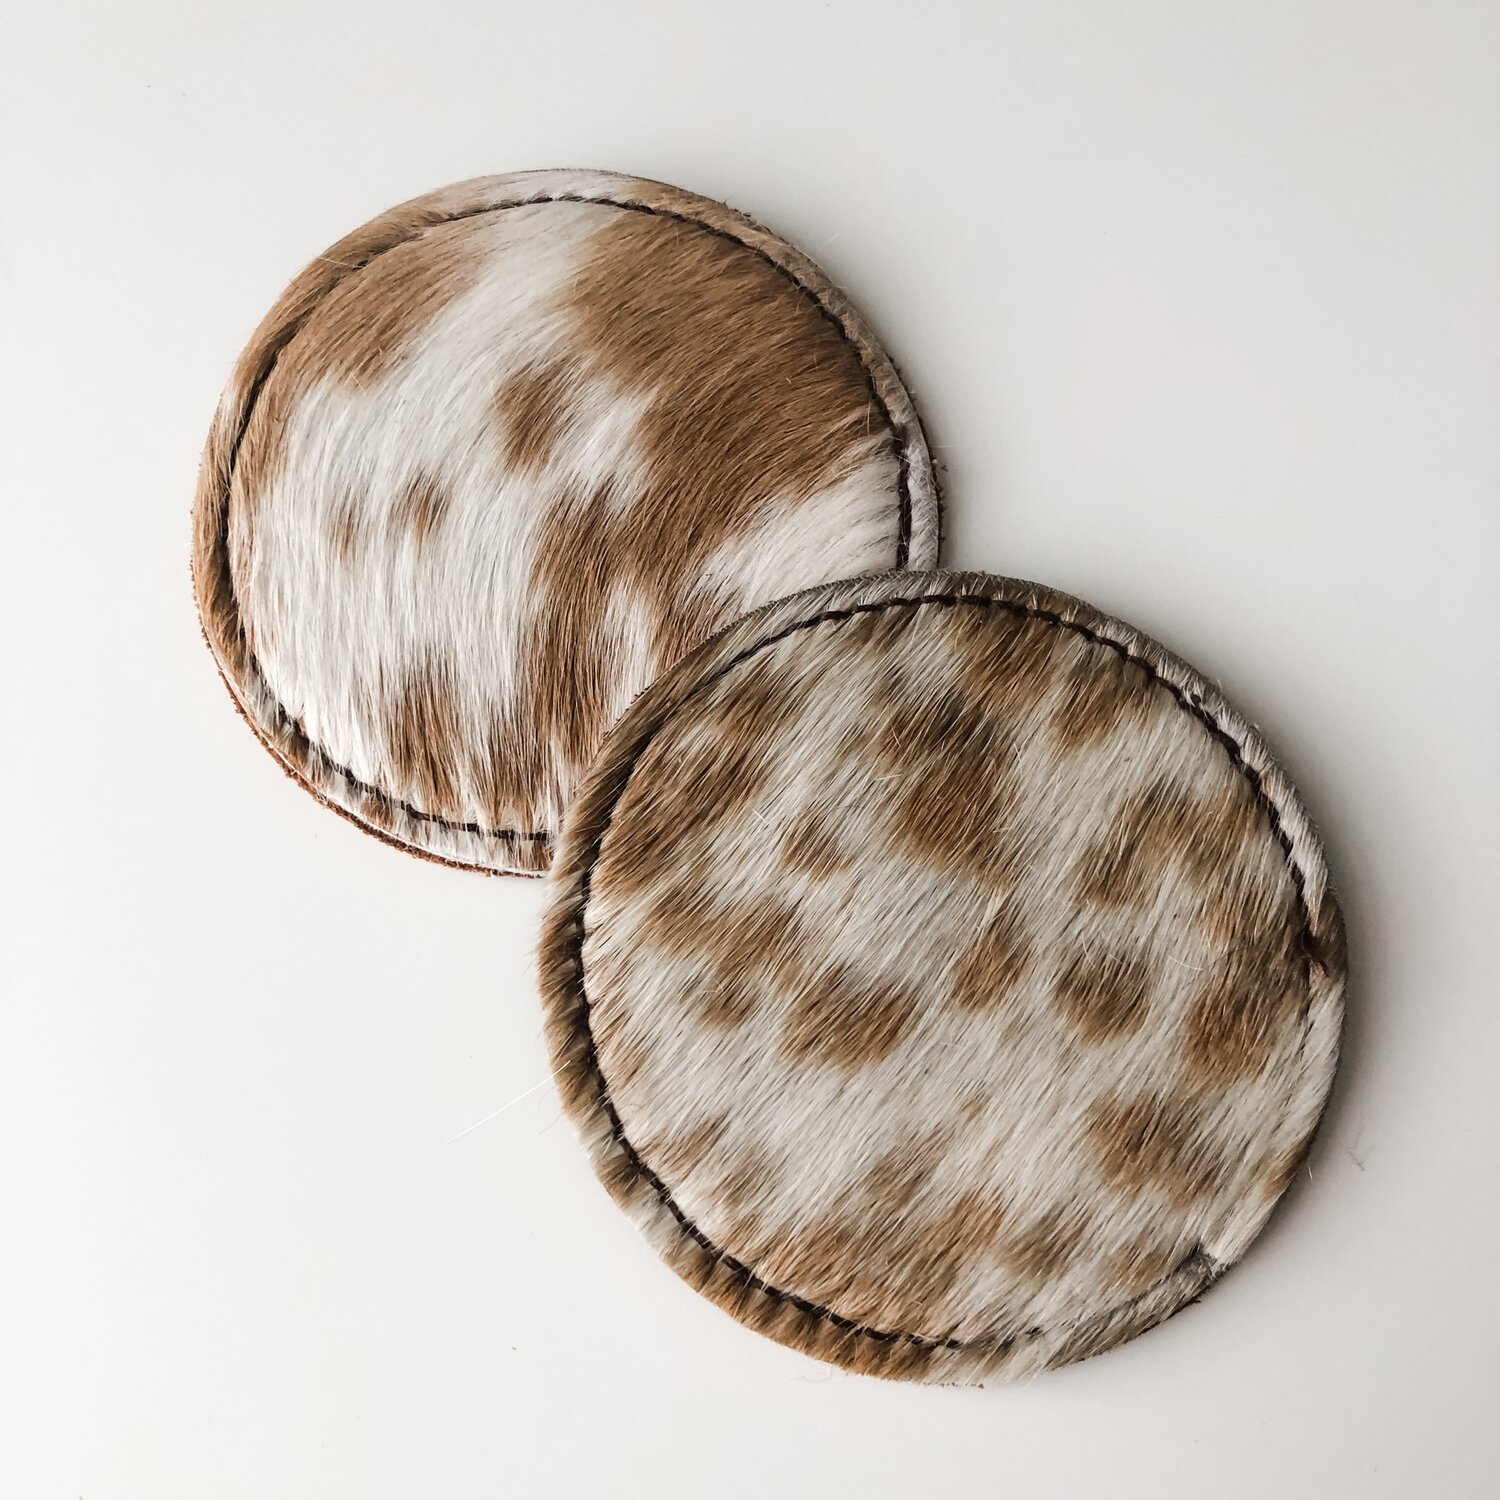 Buy Leather Cowhide Coasters (Light Brown) by McDaniel Custom